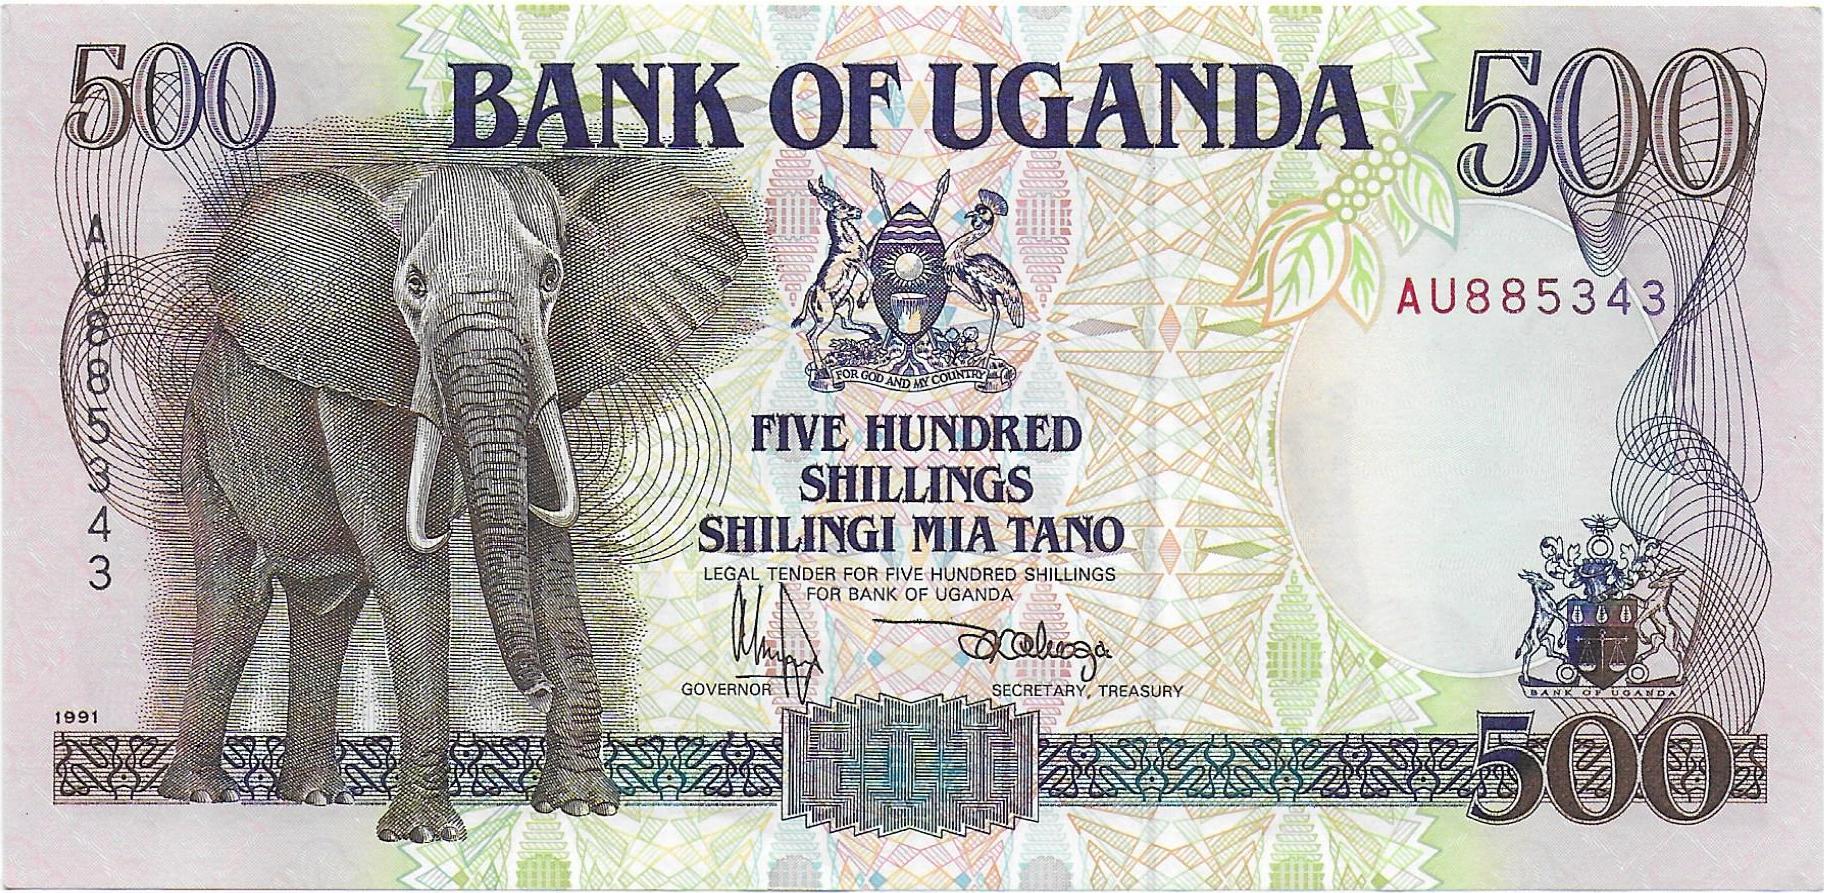 Uganda 500 Shillings front.jpg